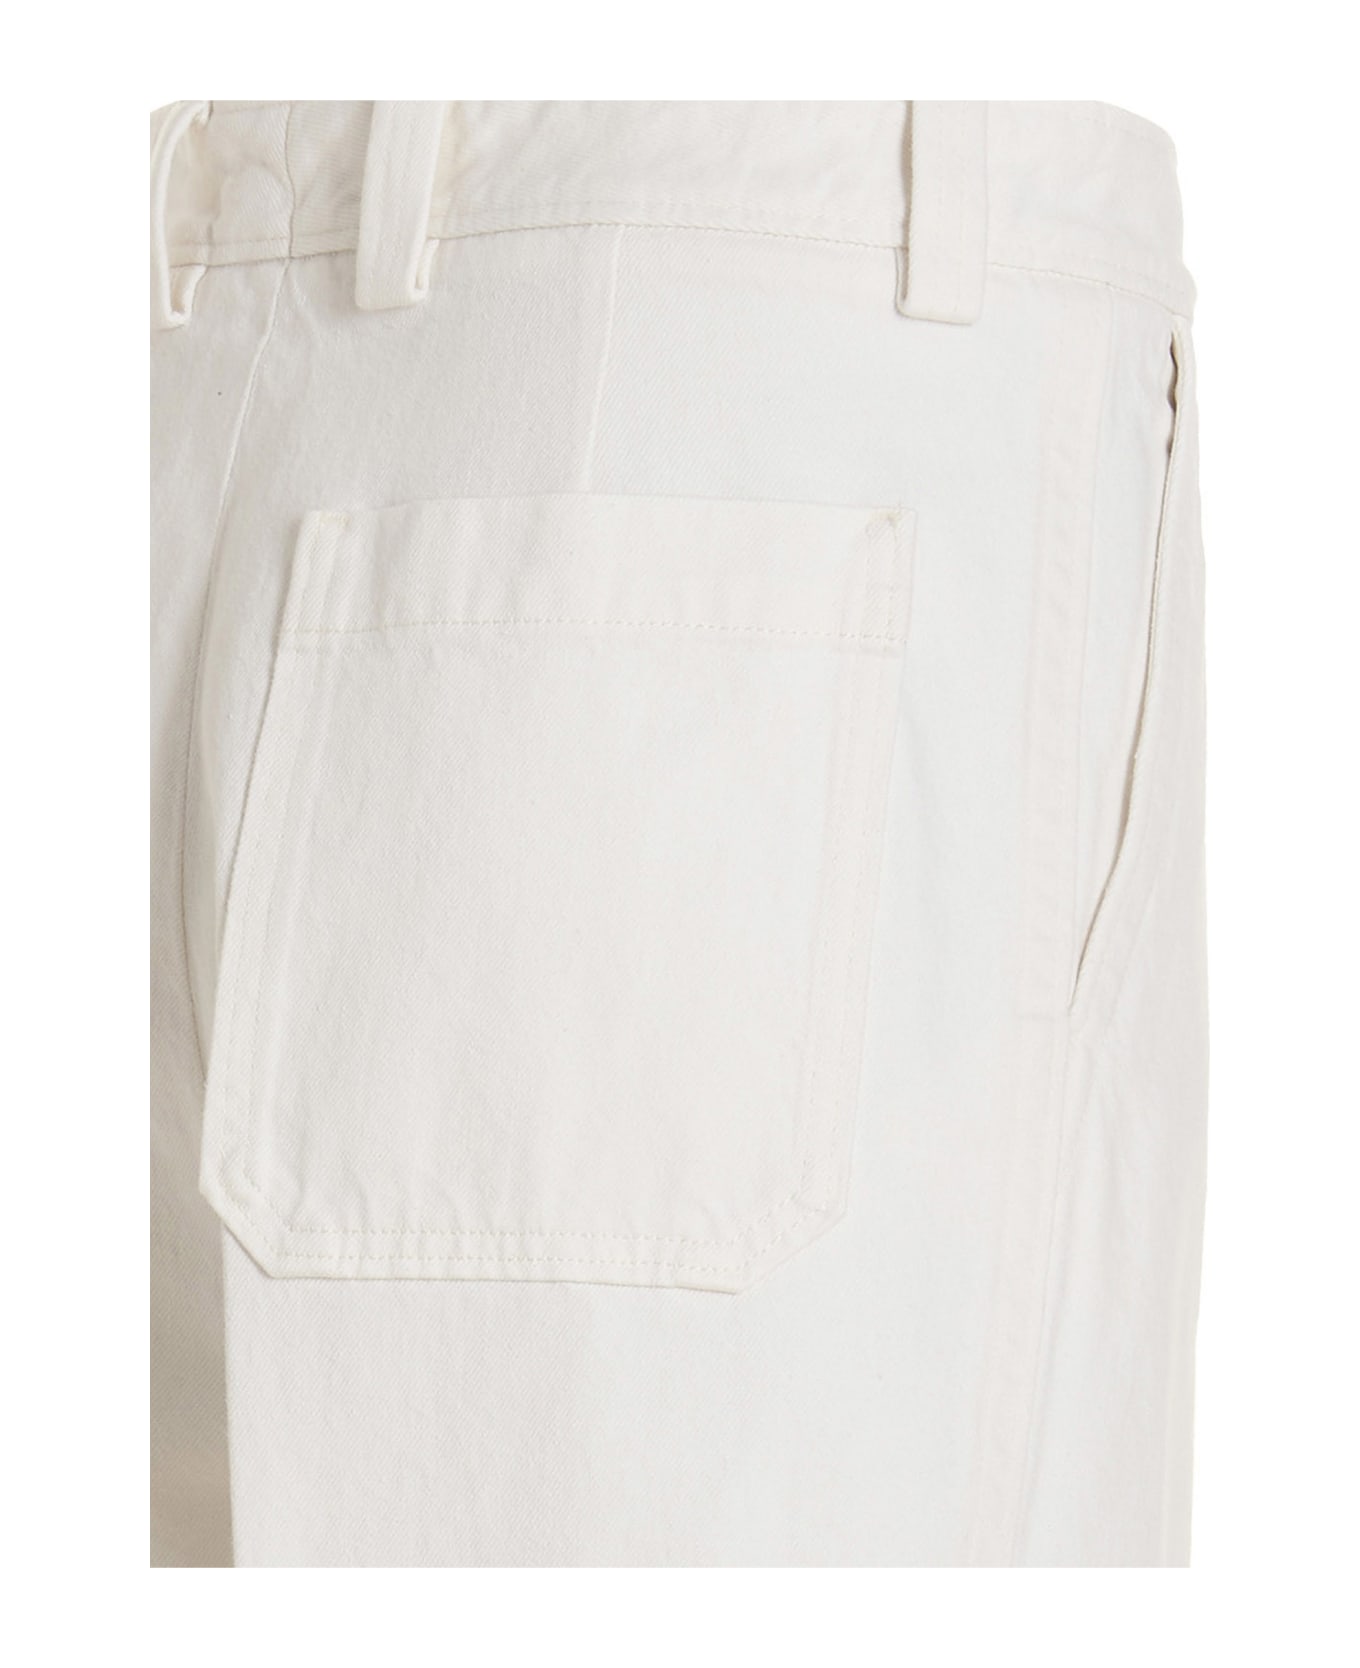 Ermenegildo Zegna Pin Tuck Jeans - White